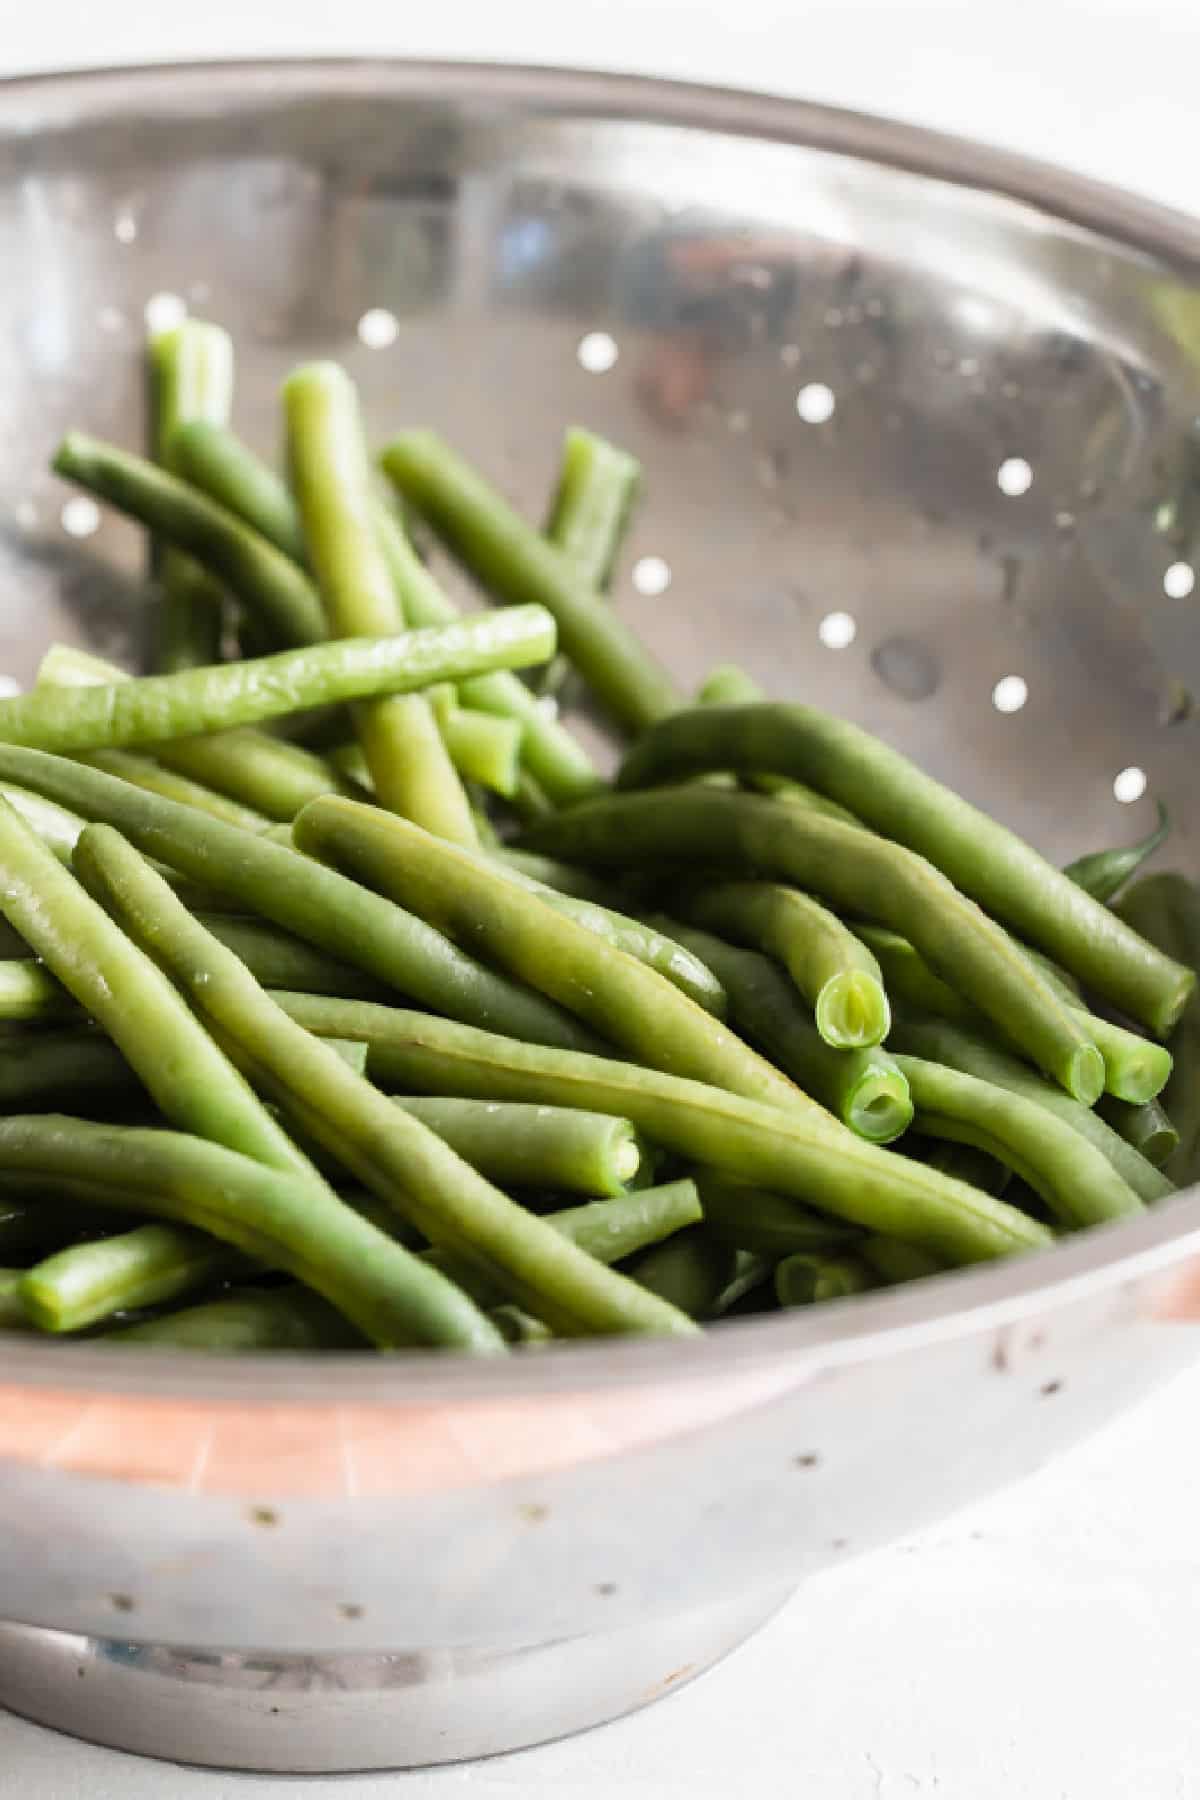 Green beans in a sliver colander.